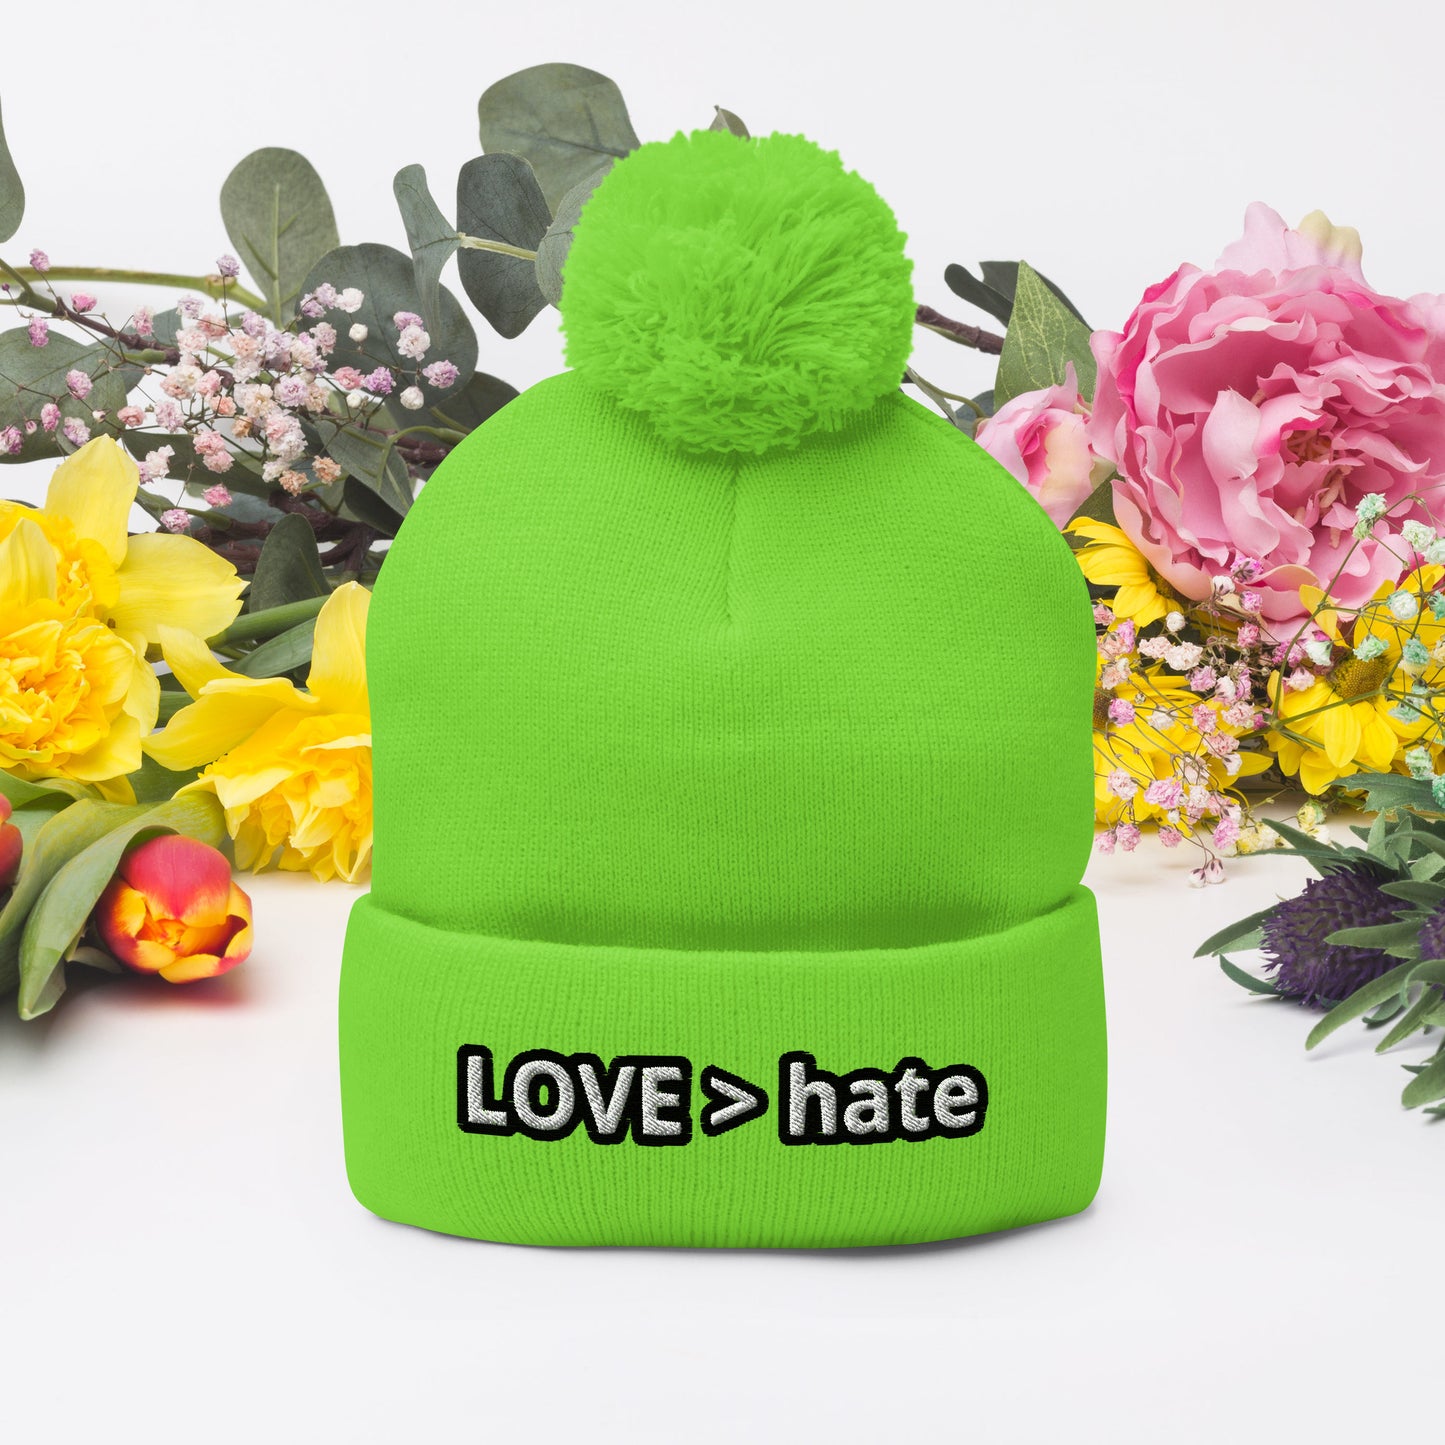 LOVE > hate Pom-Pom Beanie